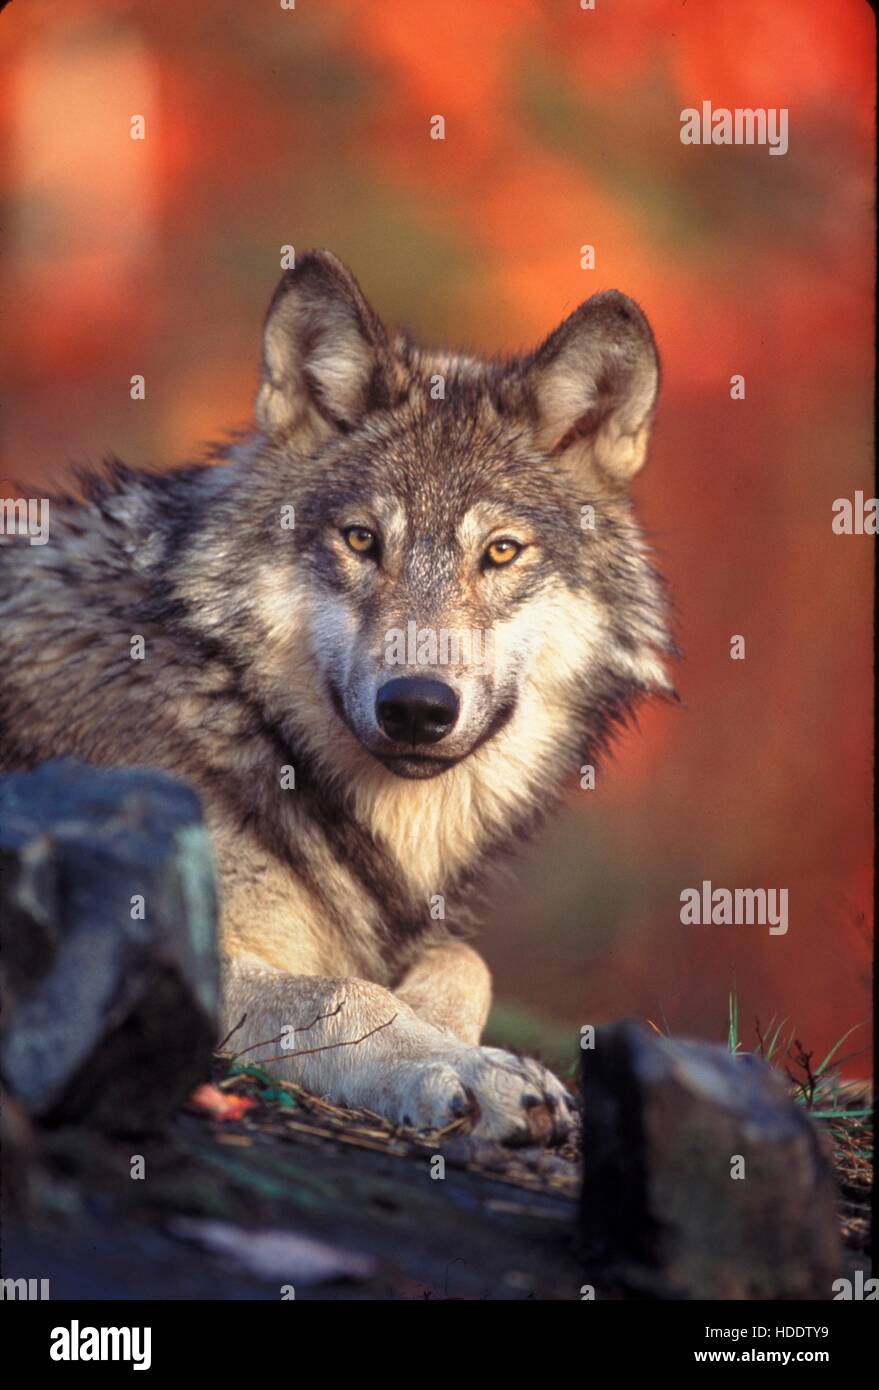 Ein junger männlicher grauer Wolf namens Reise in den wilden 24. Januar 2006 im pazifischen Nordwesten gesehen. Reise hieß früher OR-7, da war er der siebte Wolf in Oregon mit einem GPS-Tracking-Gerät ausgerüstet sein. Reise hat über 3.000 Meilen zwischen Oregon und Kalifornien verfolgt. Stockfoto